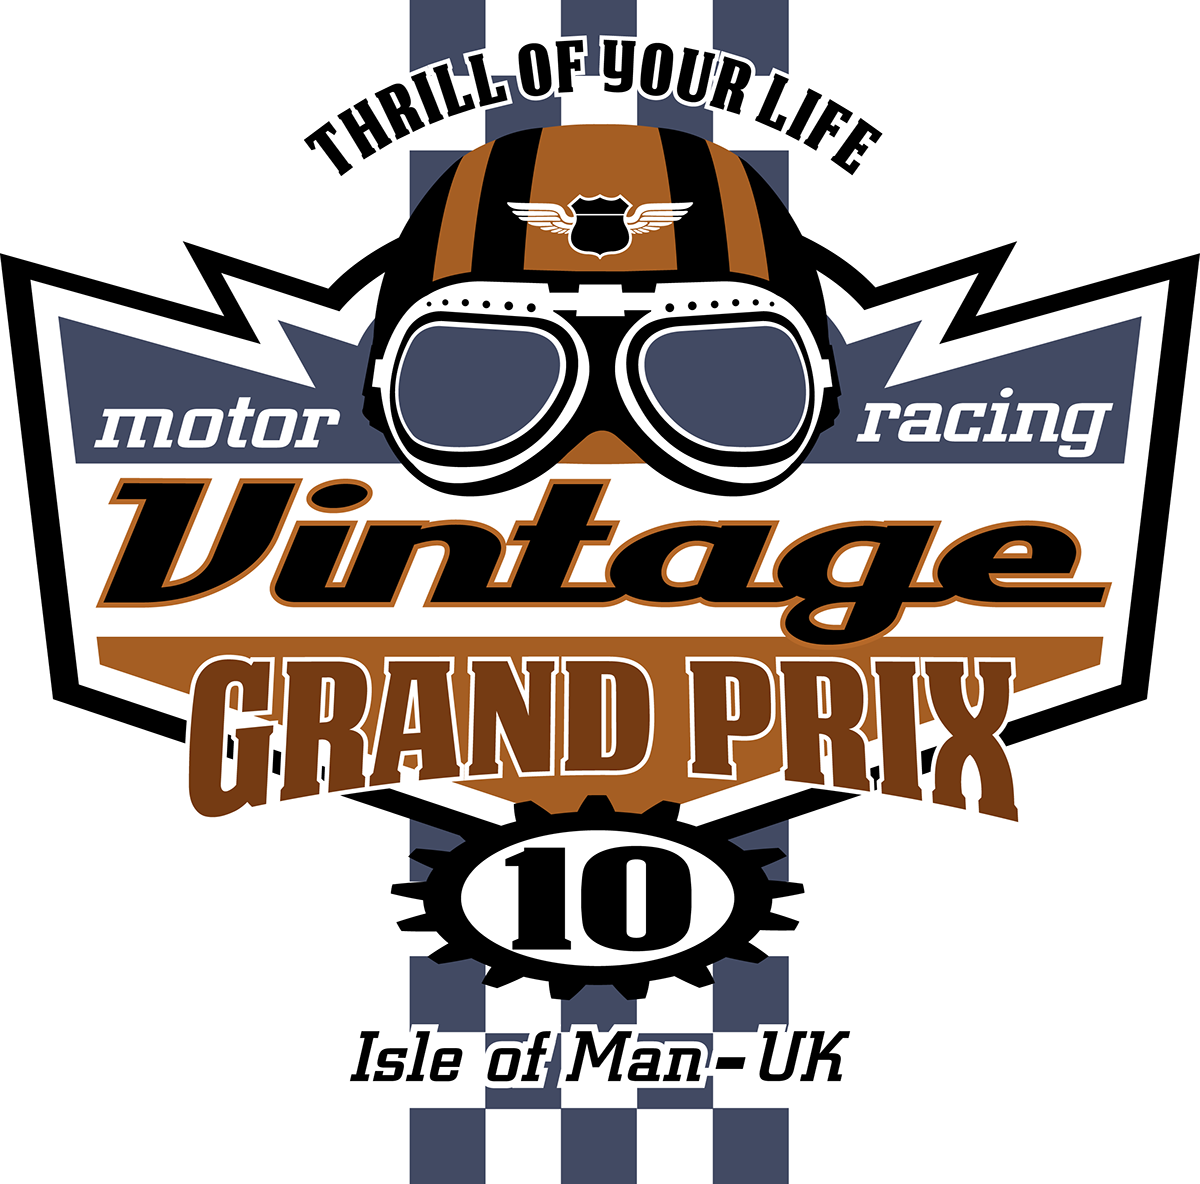 vintage motorcycles Racing speed International